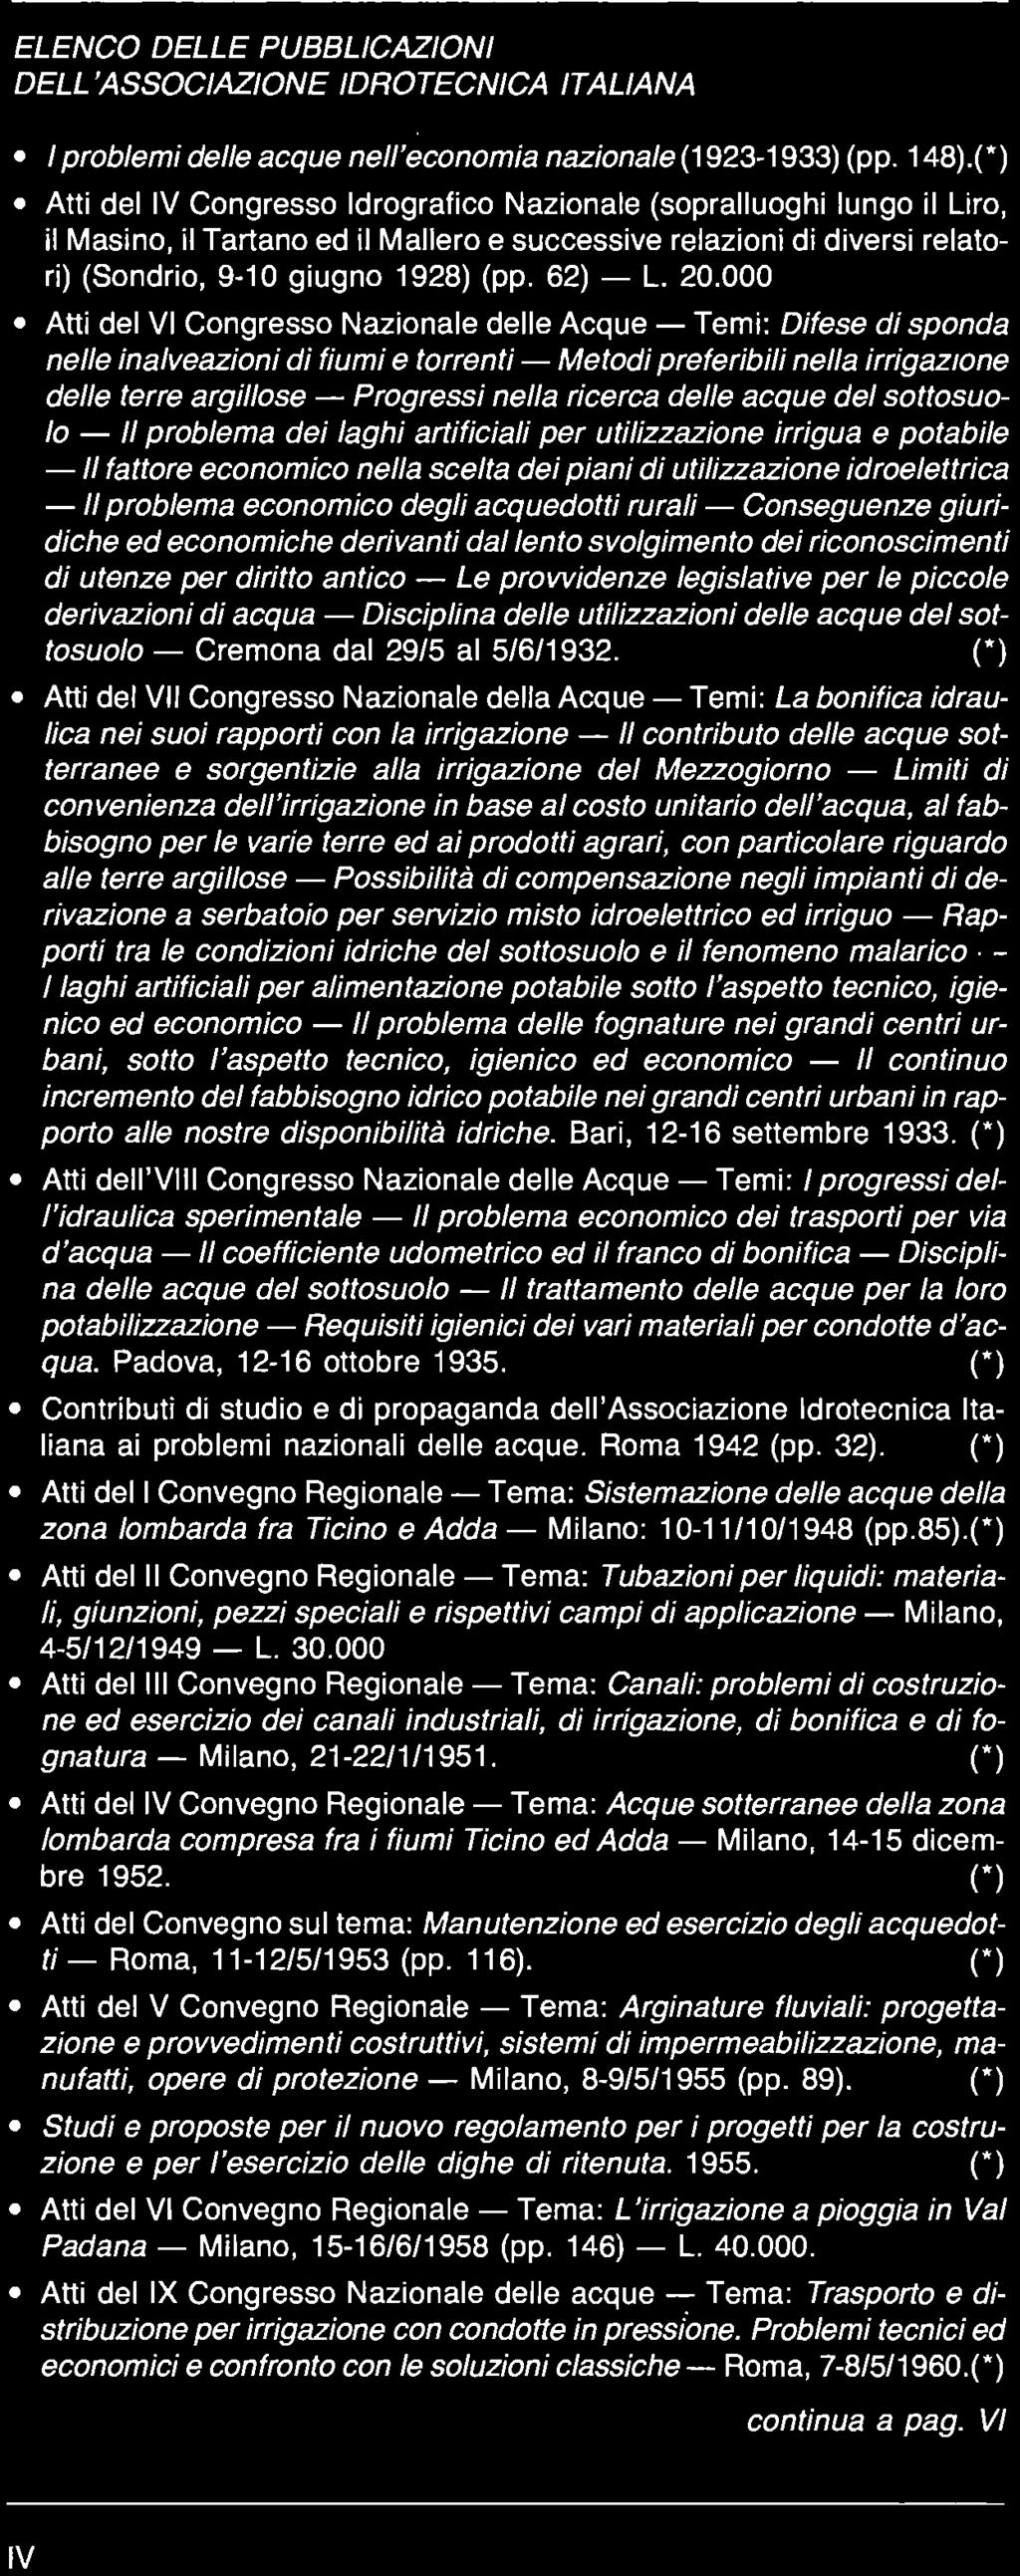 (*) Atti del Convegno sul tema: Manutenzione ed esercizio degli acquedotti - Roma, 11-12/5/1953 (pp. 116).